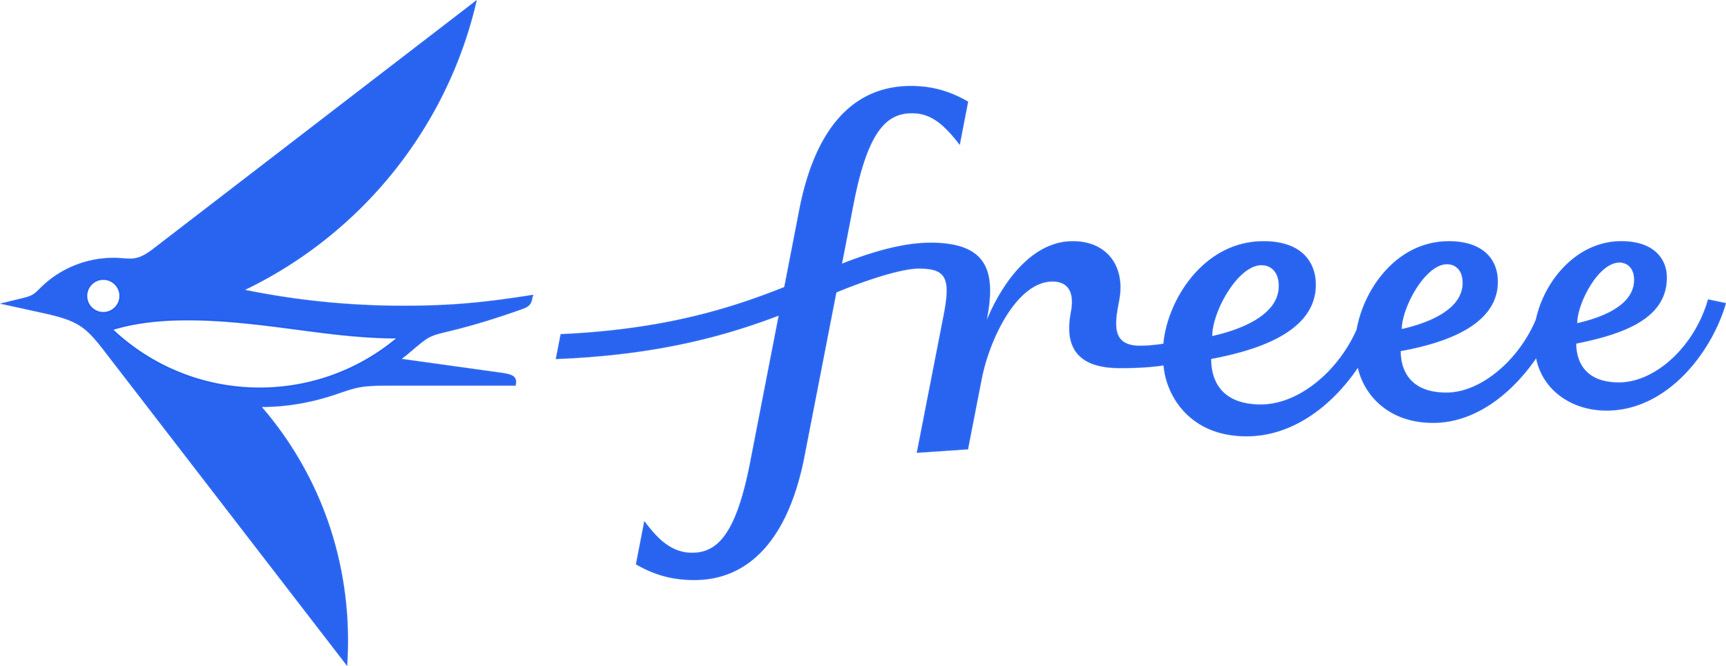 導入事例を追加しました：freee株式会社(freee finance lab）API型ブランドプリペイドプロセッシングサービスを導入